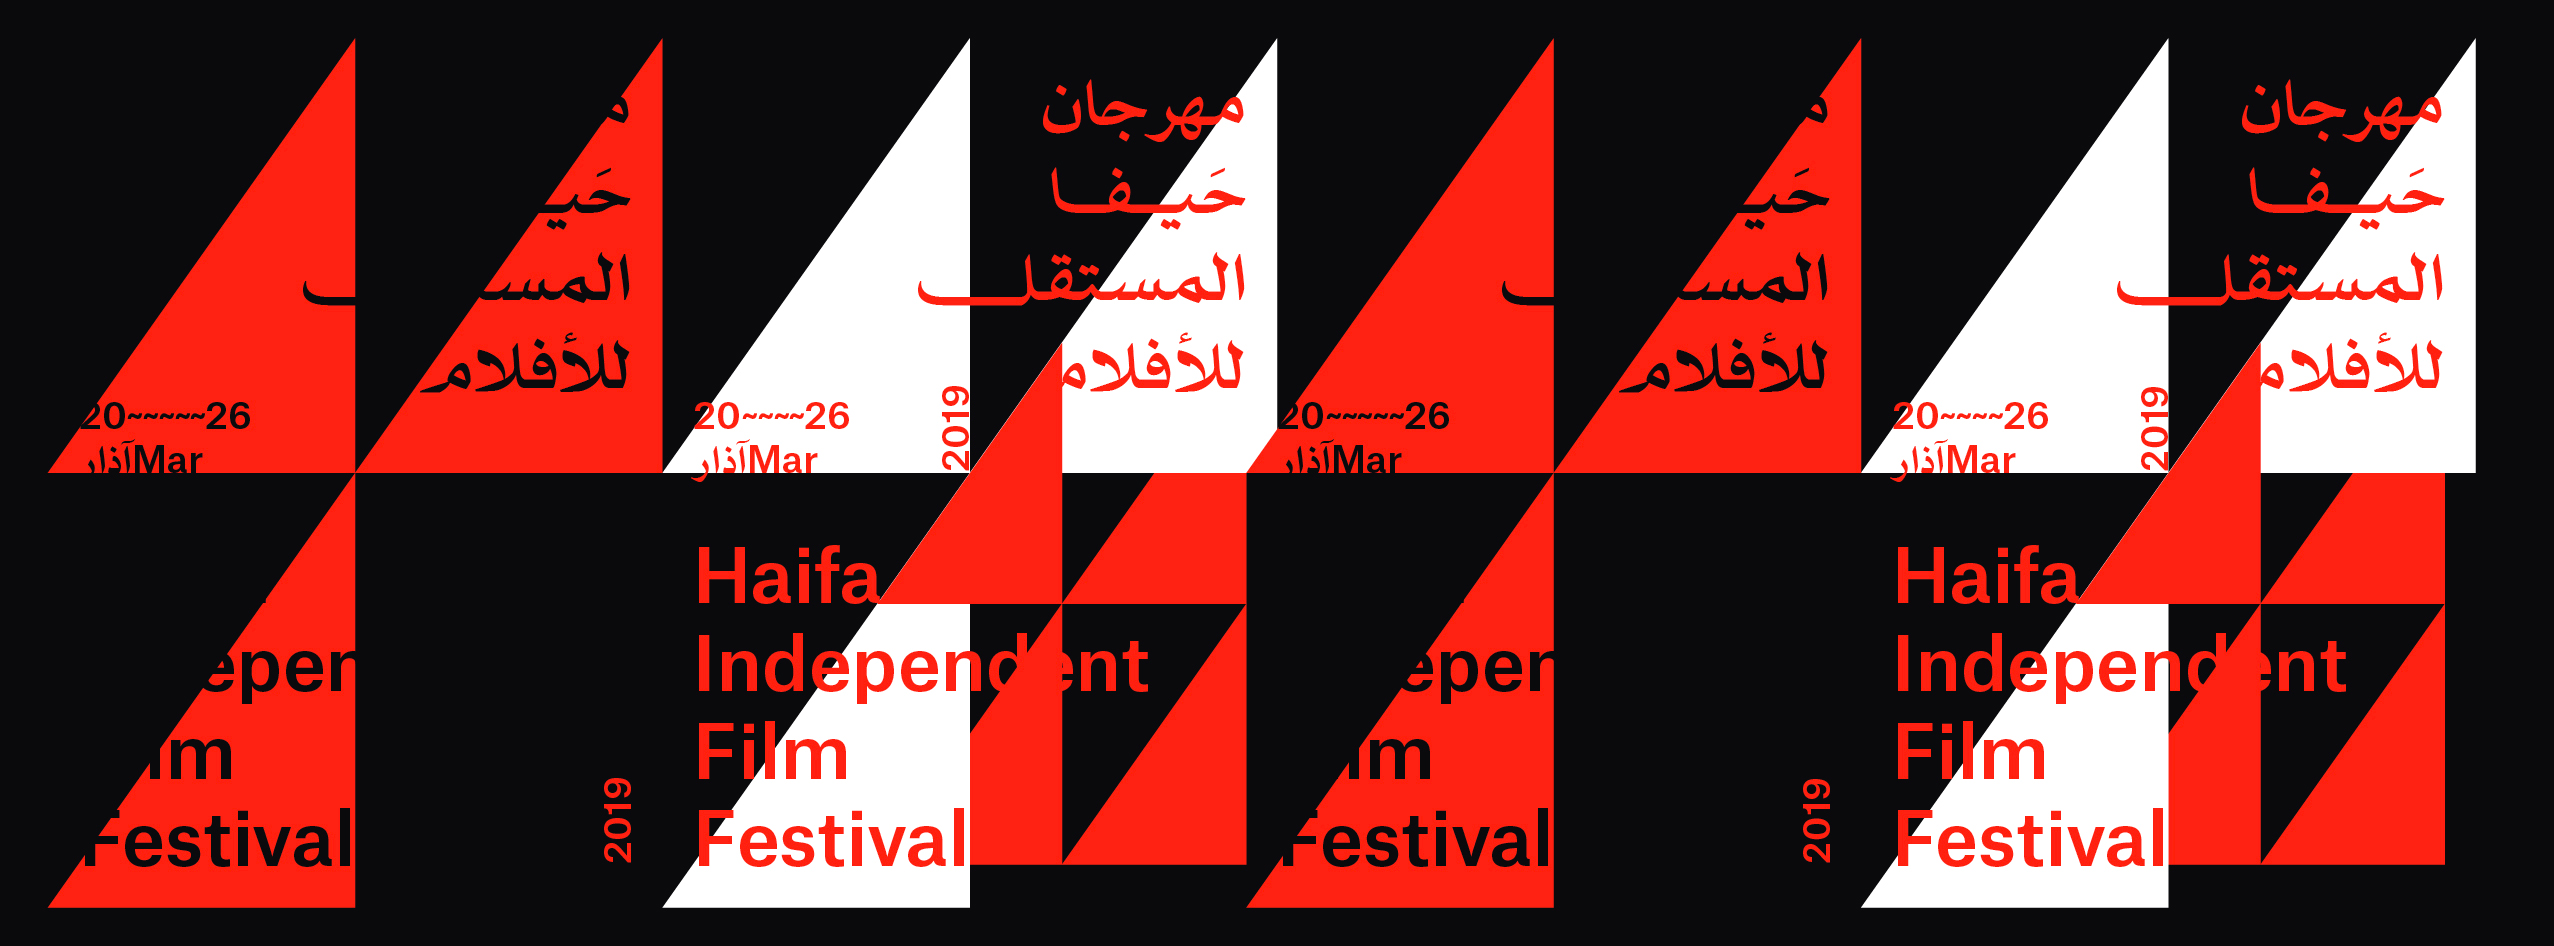 مهرجان حيفا المستقلّ للأفلام يُعلن عن موعد دورته الرابعة